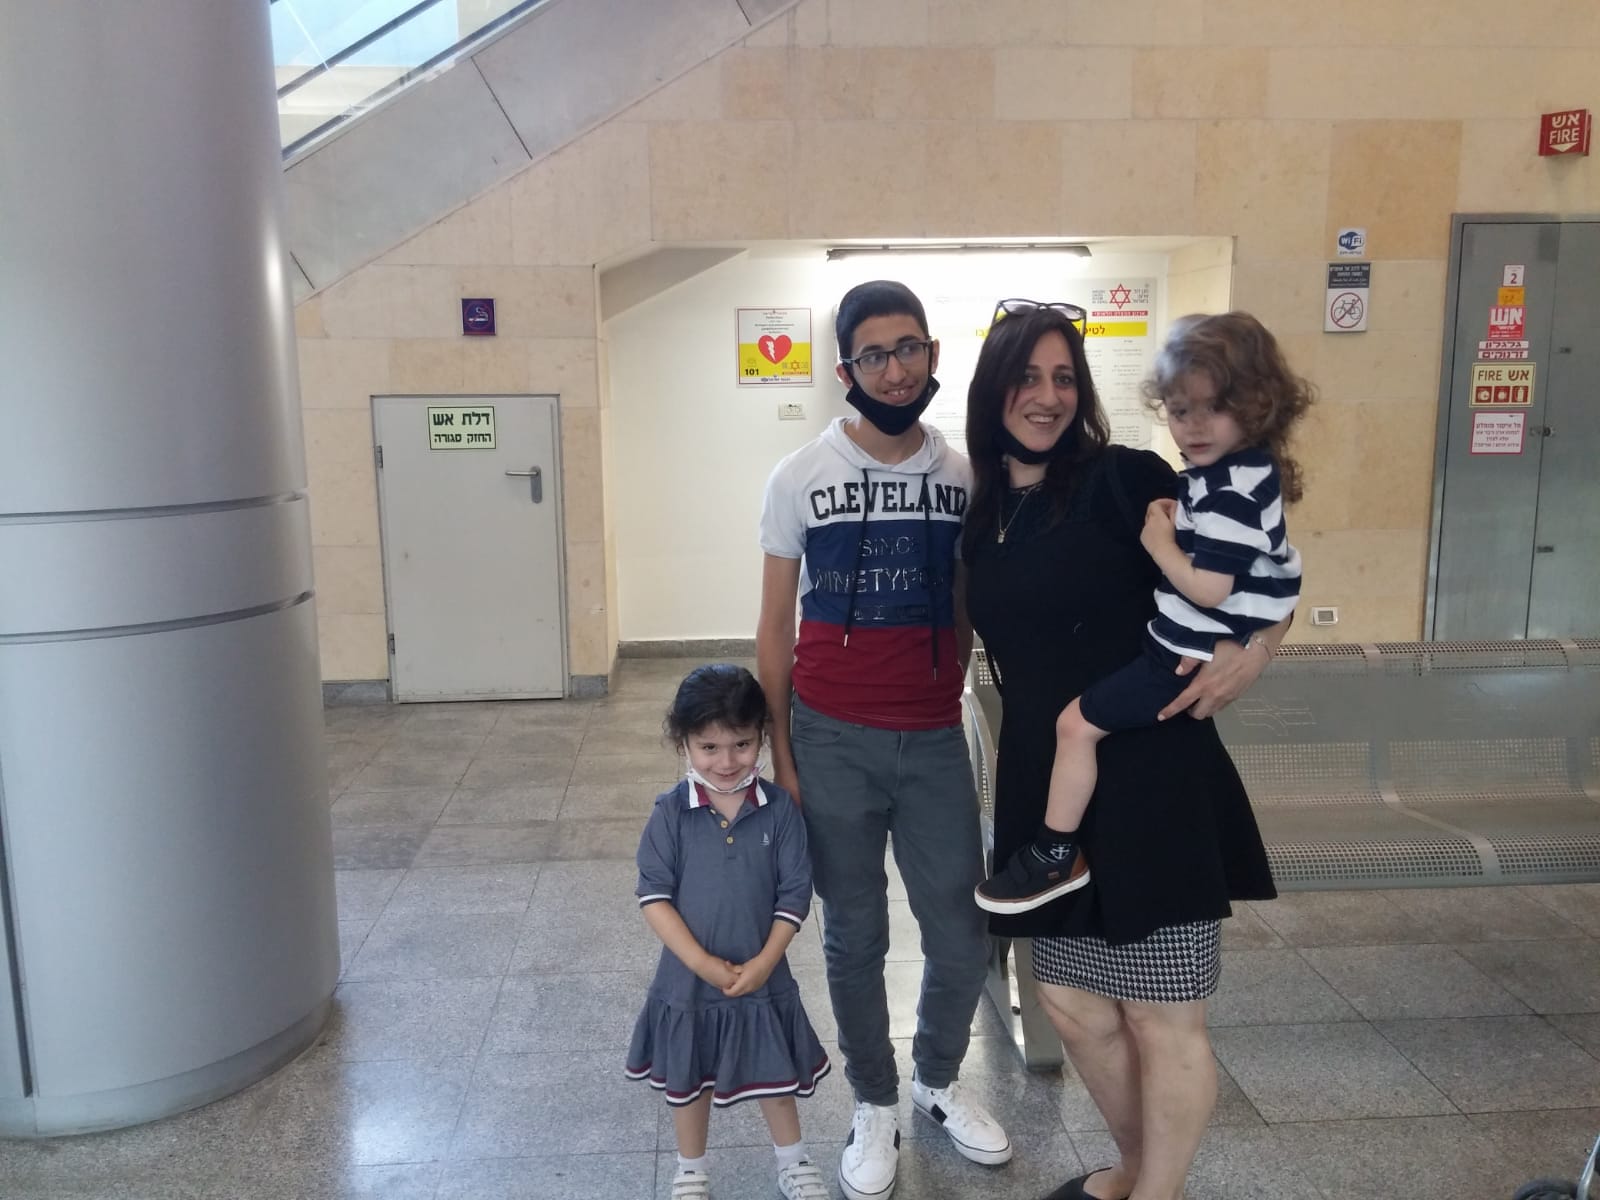 אחרי דקות של בהלה המשפחה התאחדה צילום רכבת ישראל 